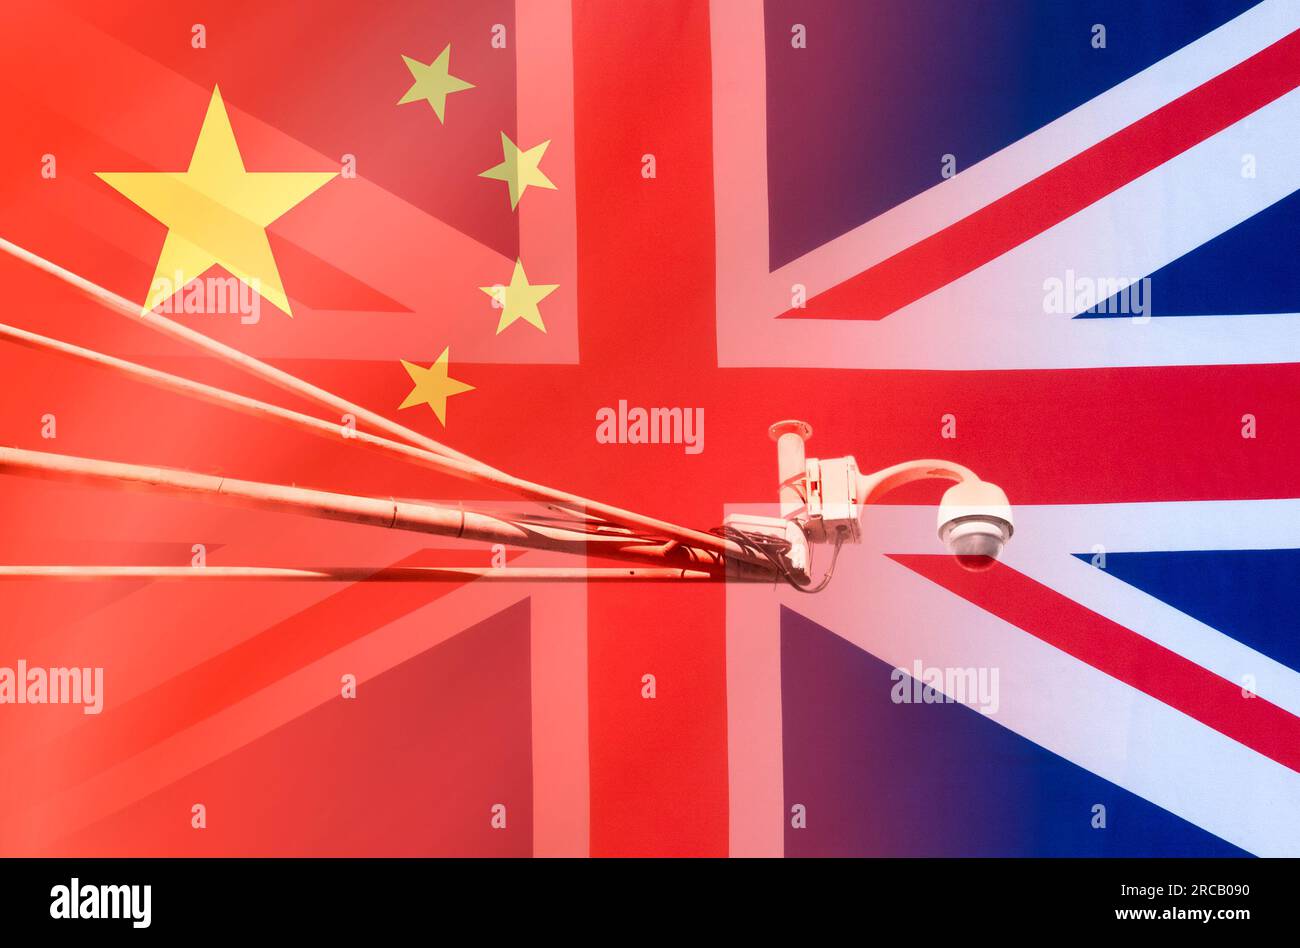 Drapeau de la Chine et du Royaume-Uni, Royaume-Uni, avec caméra cctv. Espionnage, spyware, gouvernement chinois... concept Banque D'Images